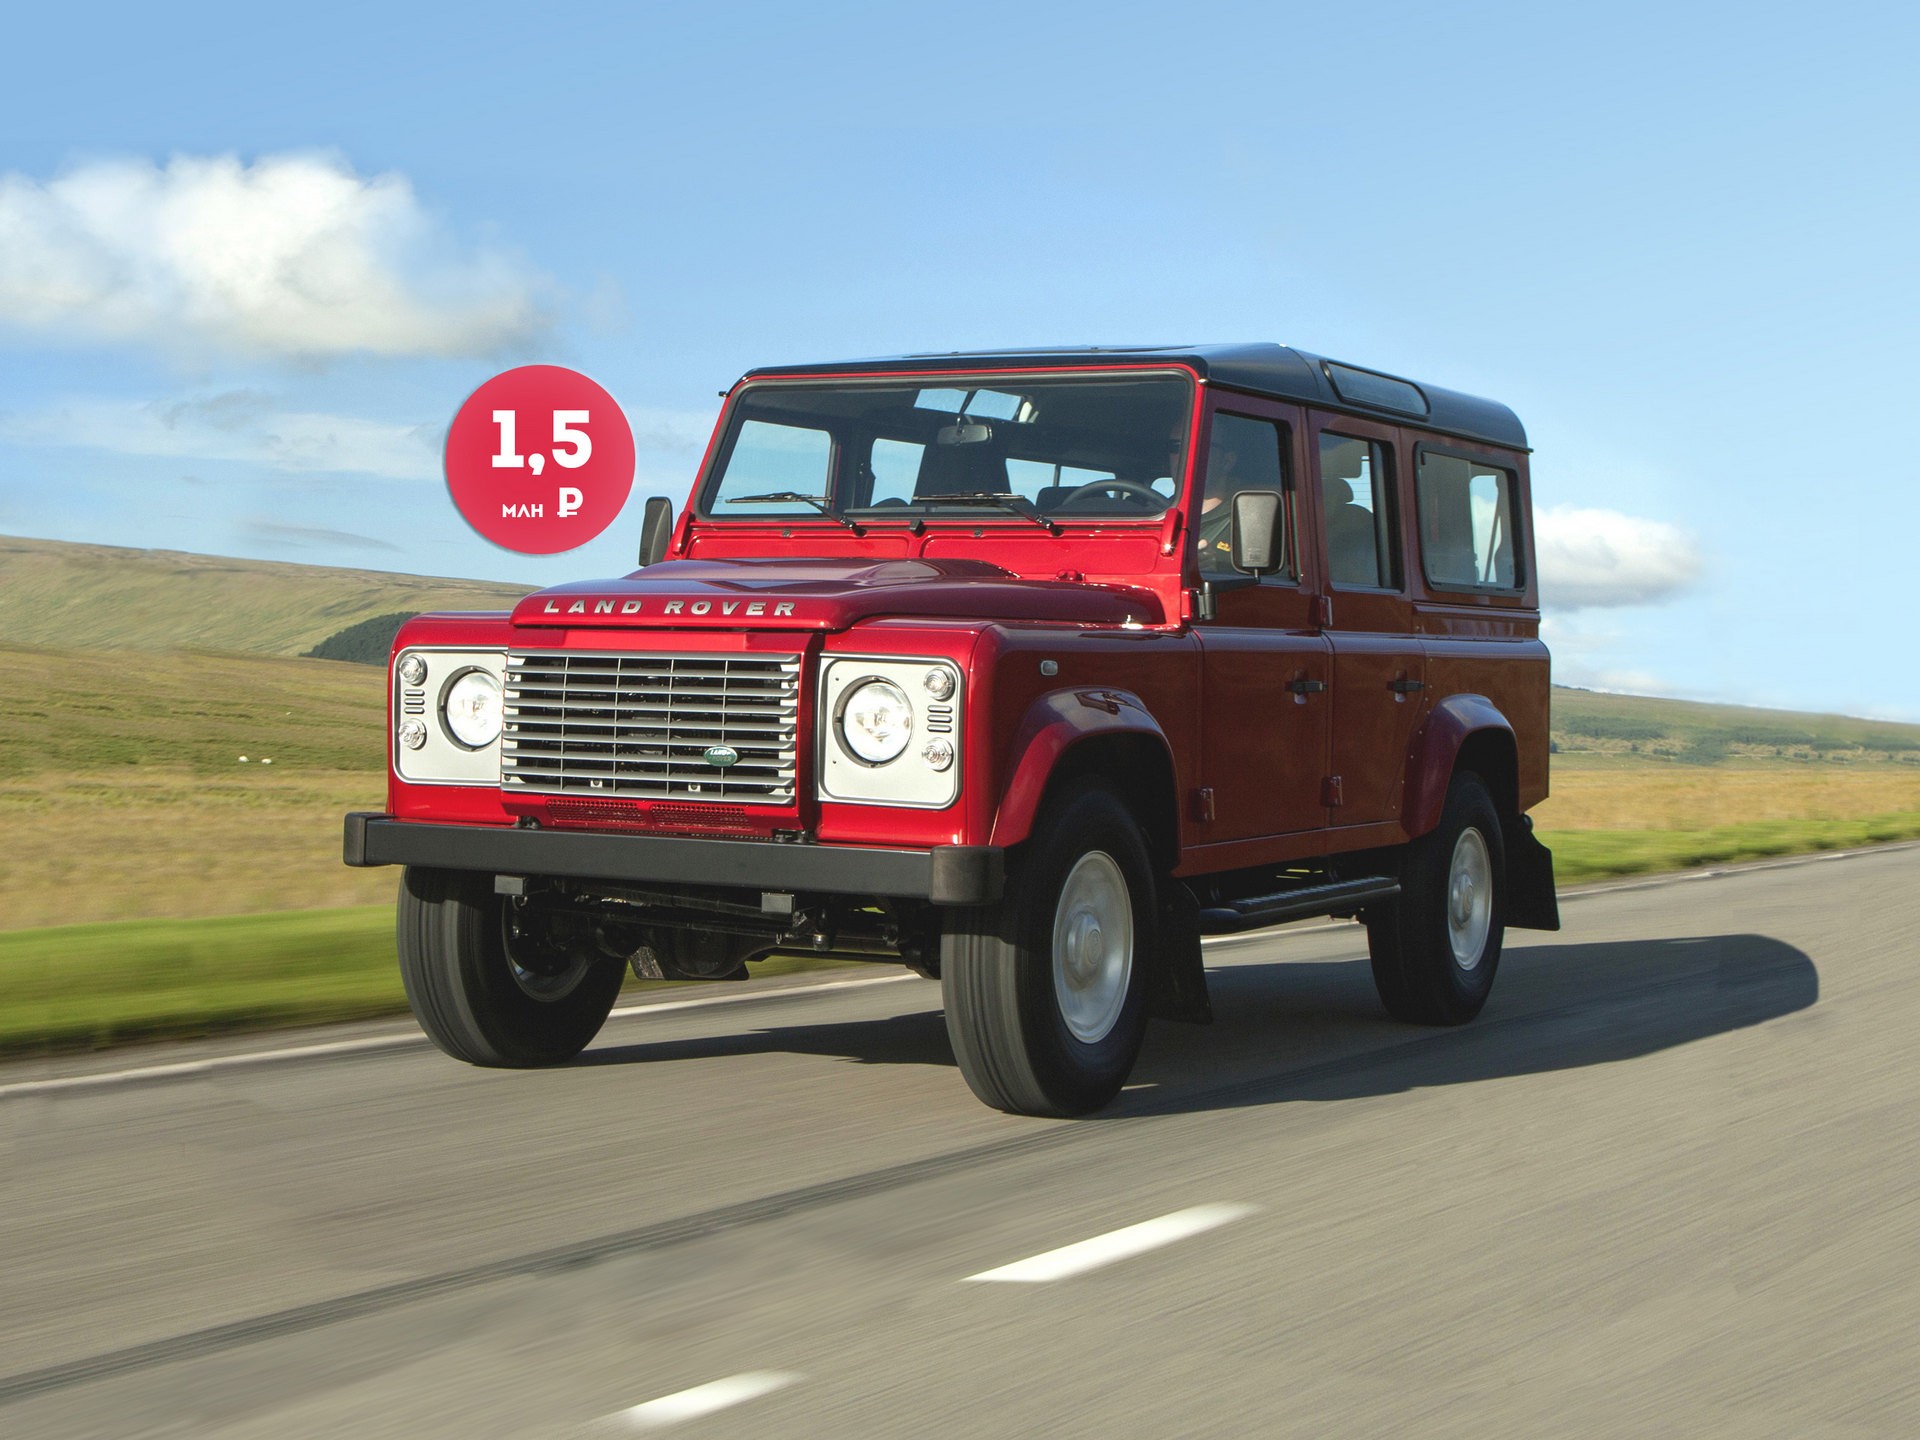 Алюминий не спасет: стоит ли покупать Land Rover Defender за 1,5 миллиона рублей